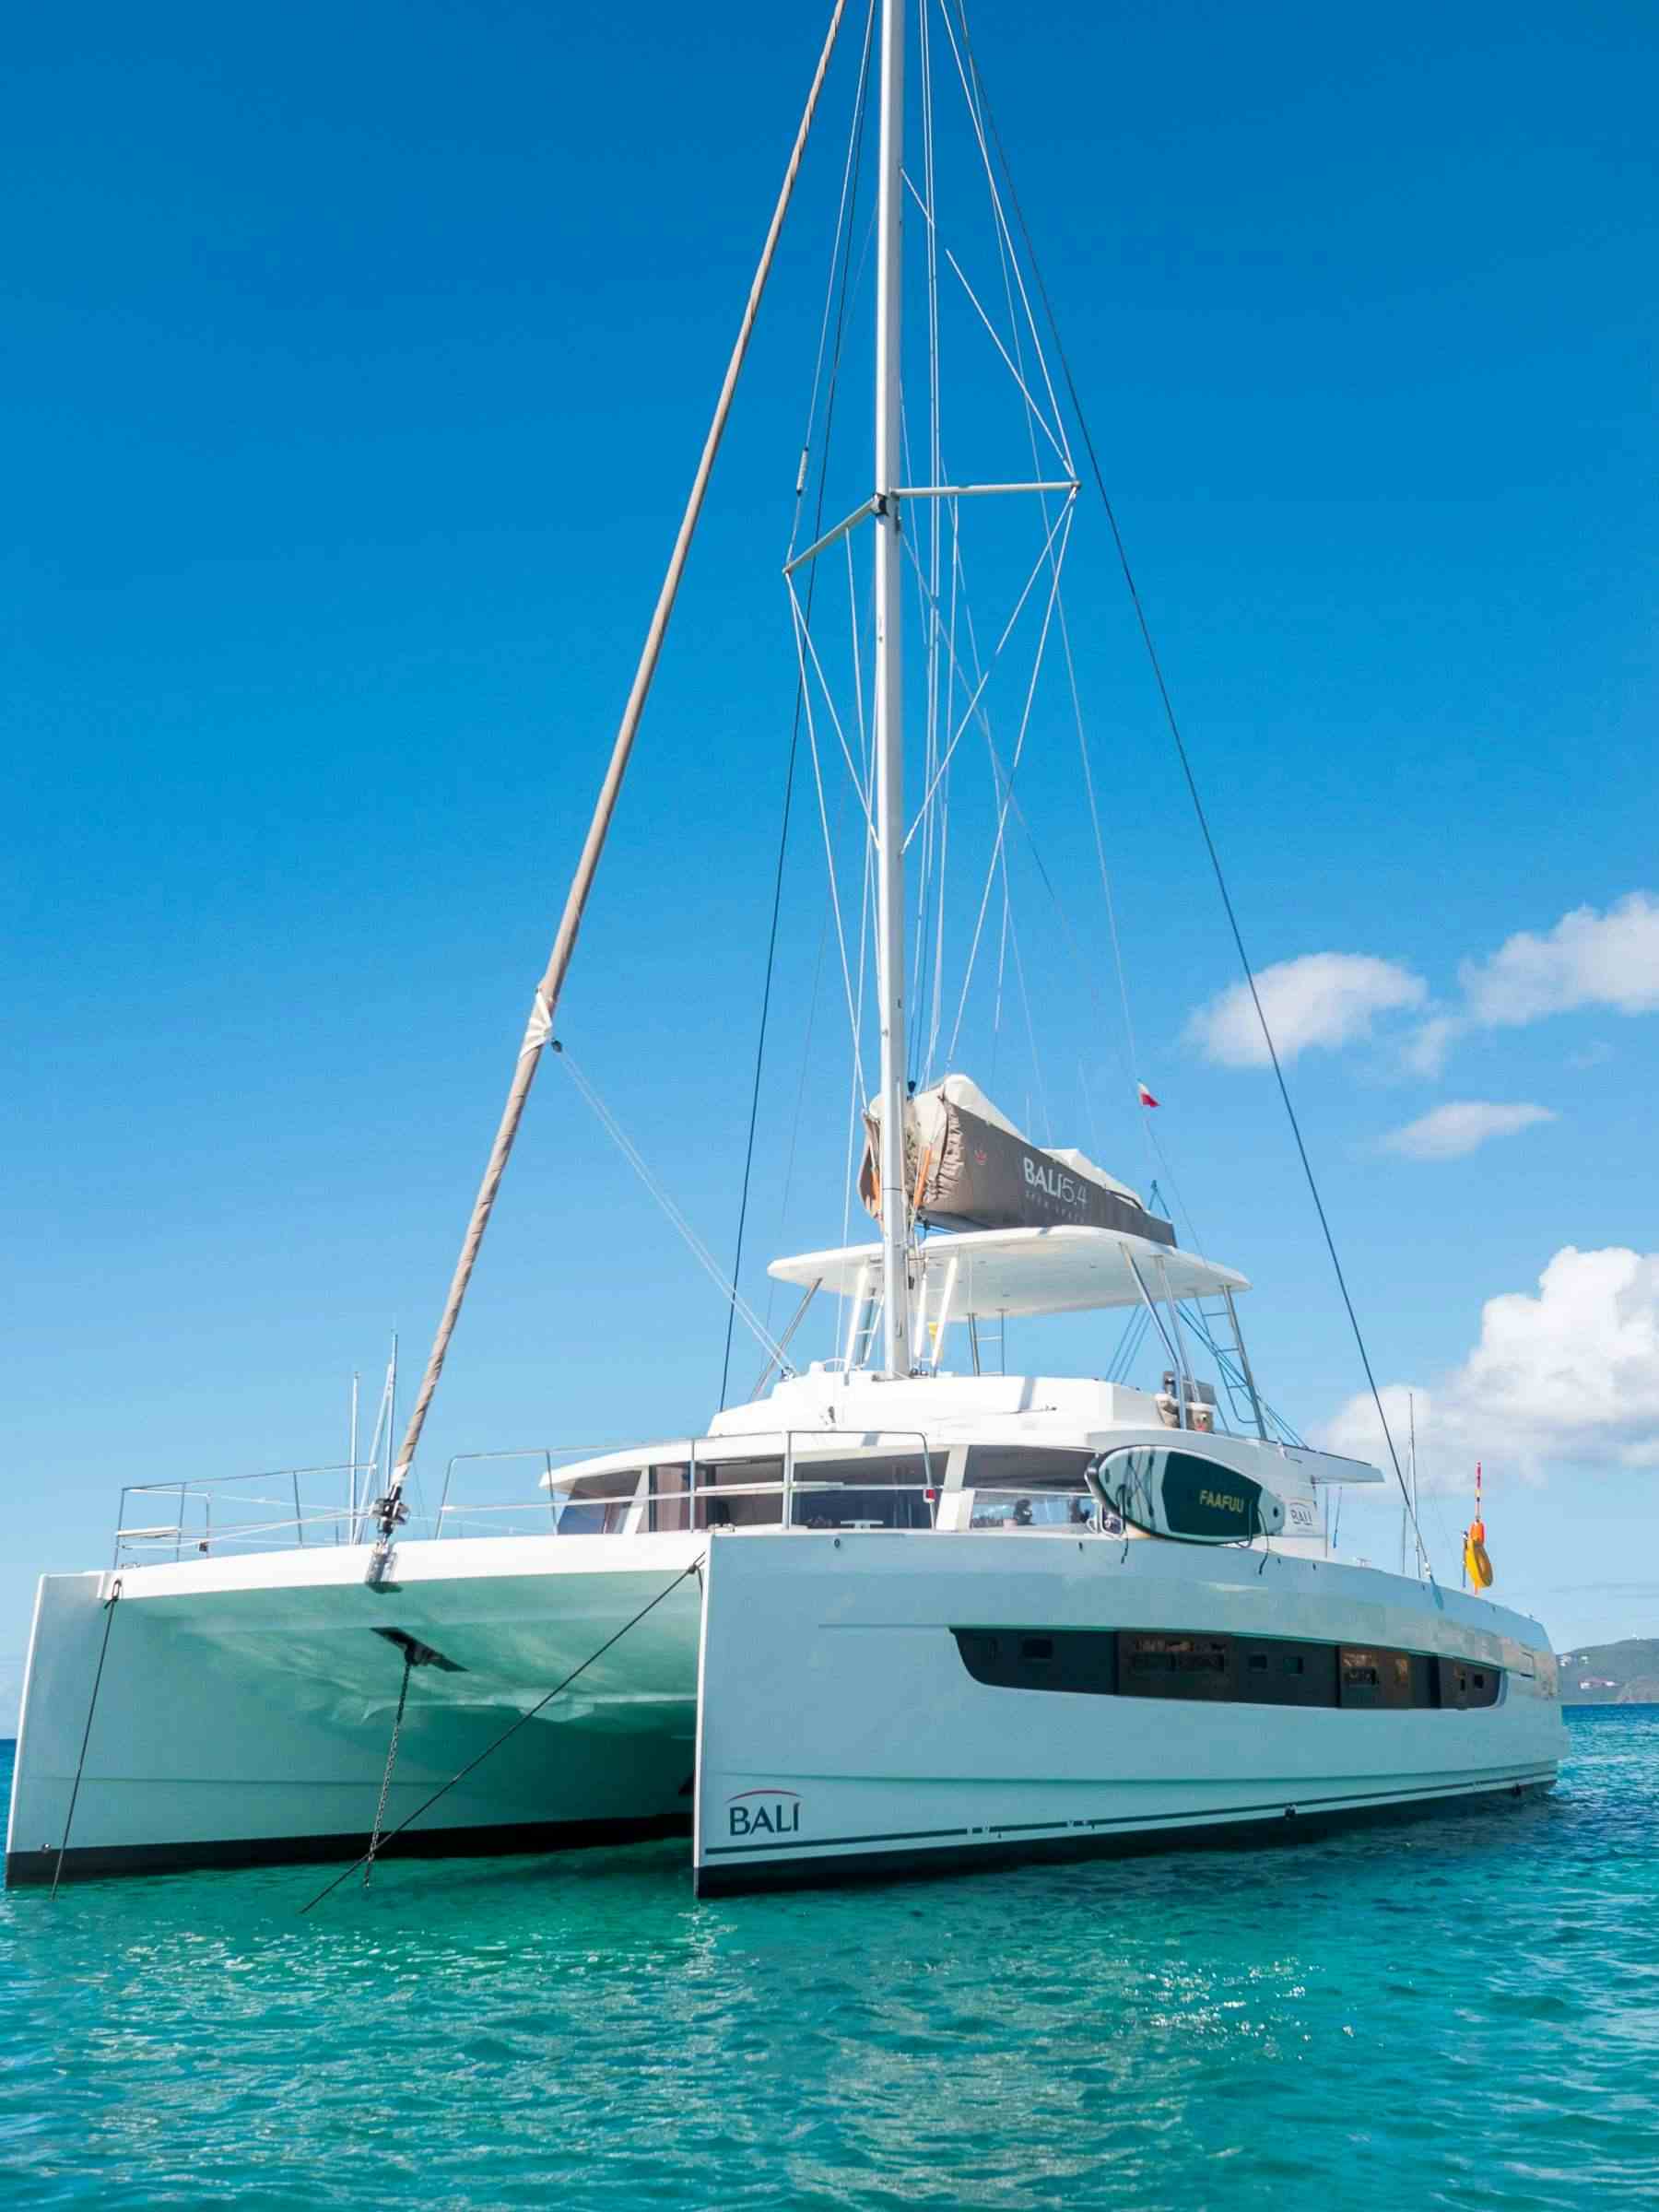 LEGASEA - Yacht Charter St Maarten & Boat hire in Caribbean 1